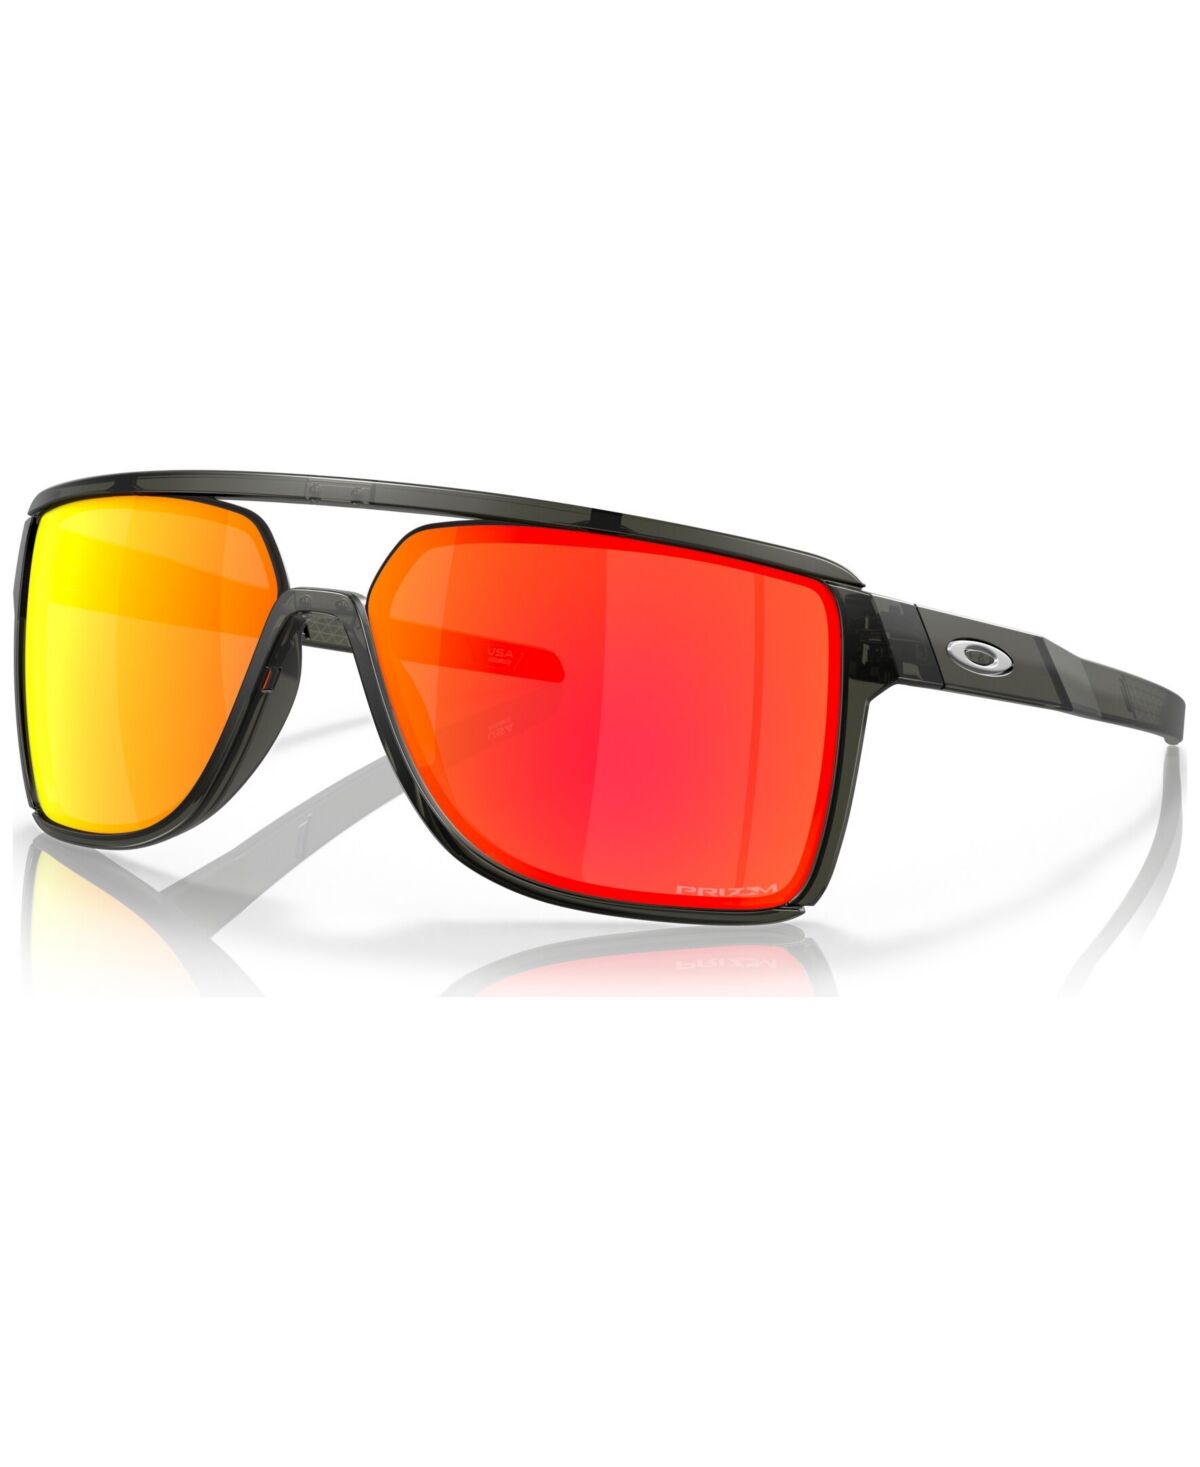 Oakley Men's Sunglasses, OO9147-0563 - Matte Gray Smoke